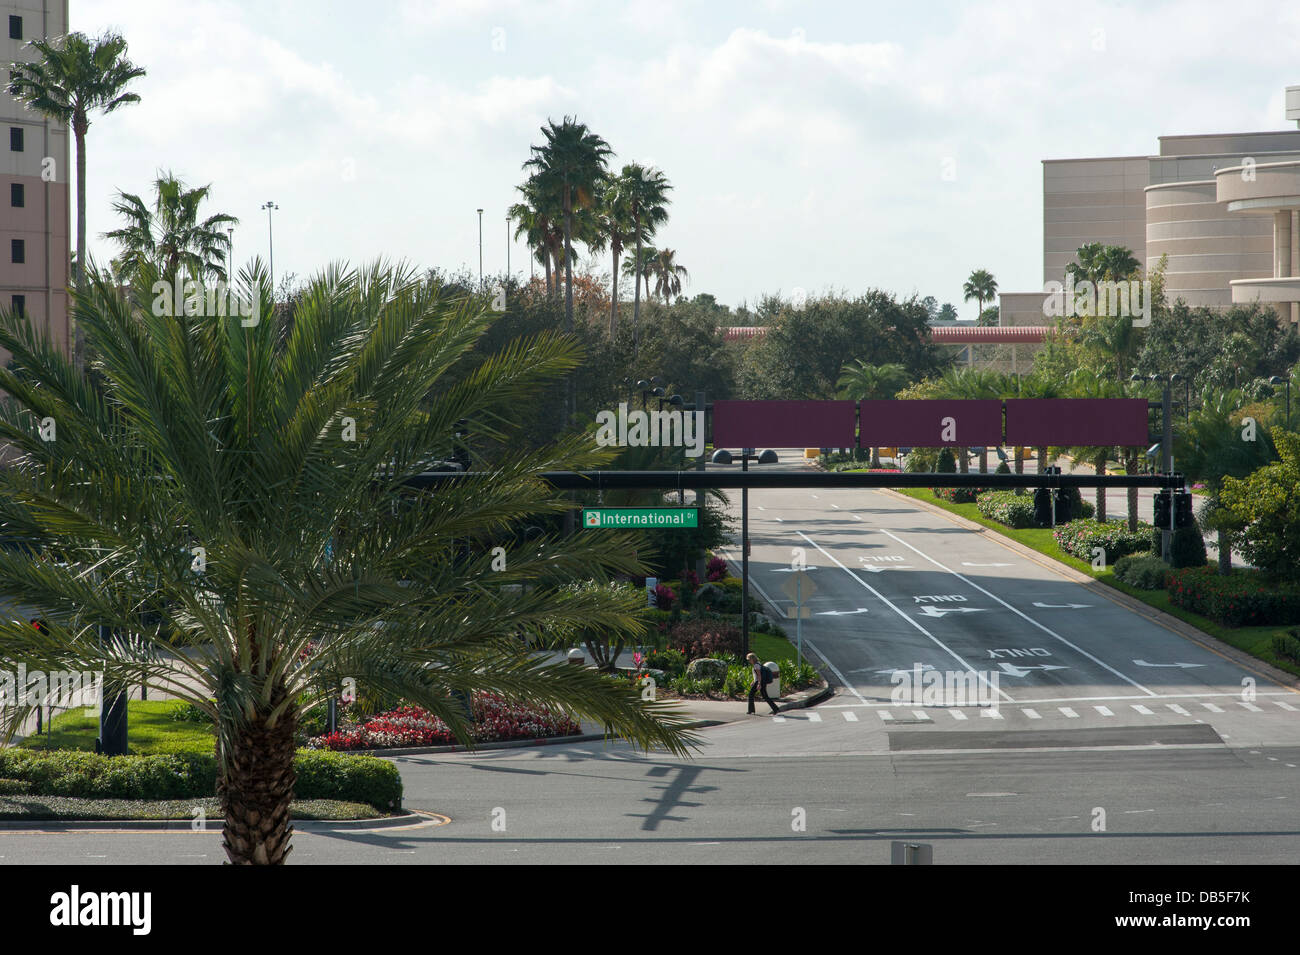 Attraversamento pedonale strada, International Drive cartello stradale chiaramente visibile, vicino al Convention Center di Orlando, Florida. Foto Stock